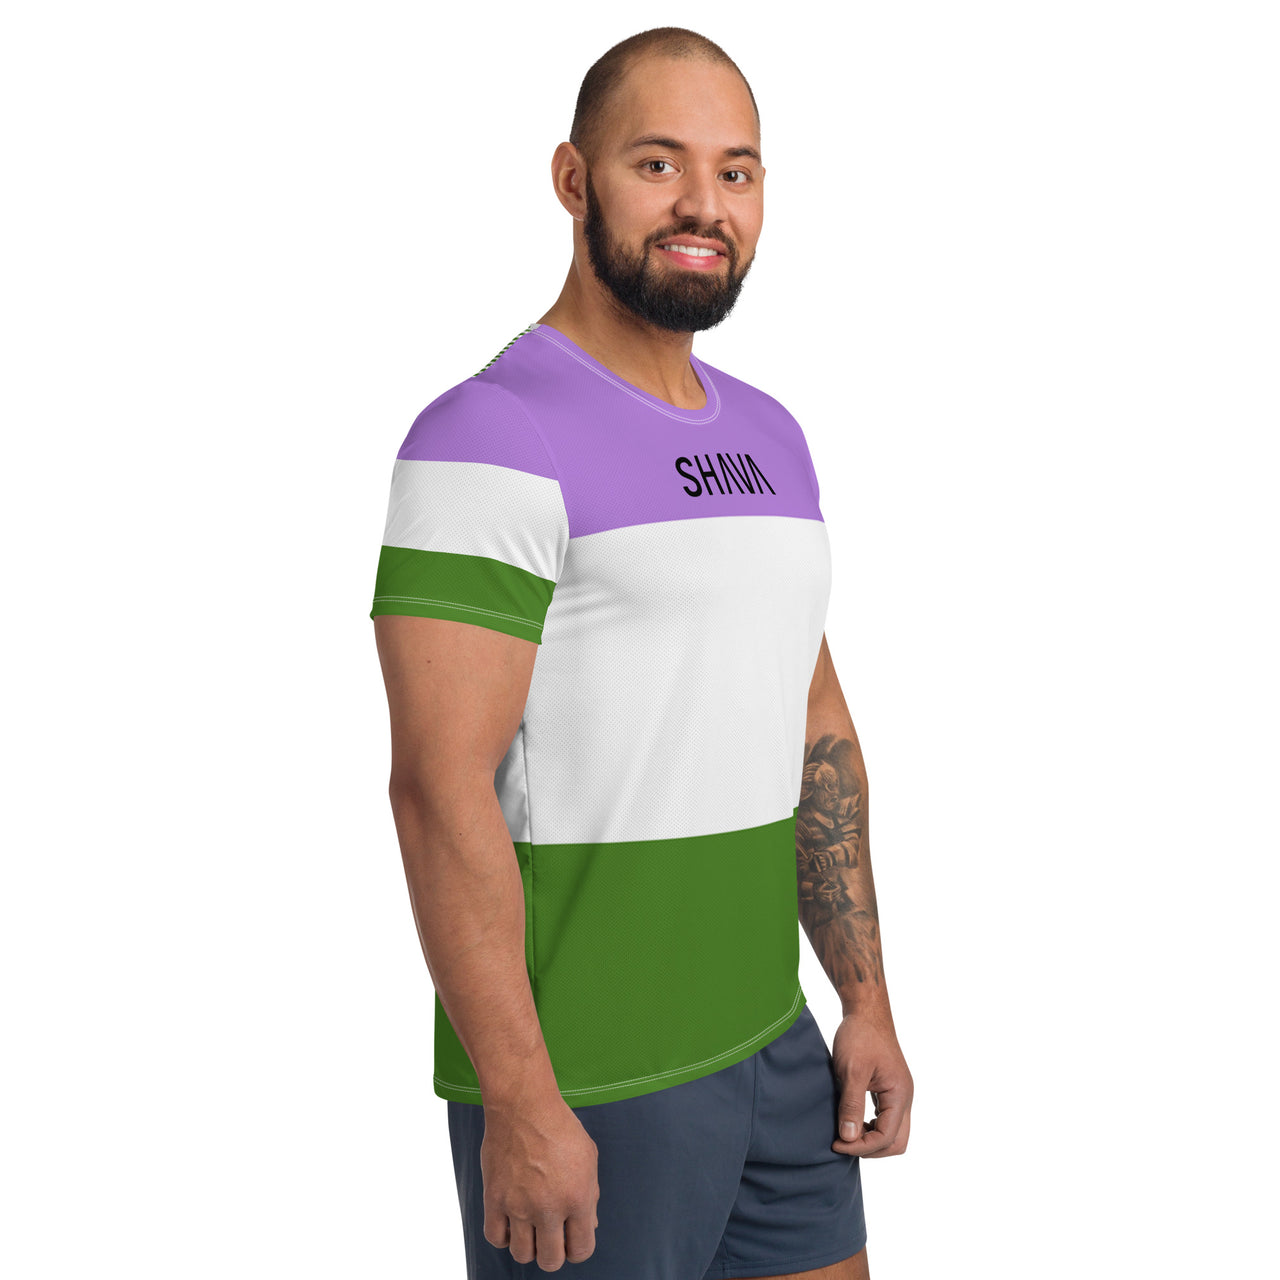 Gender Queer Flag LGBTQ T- Shirt Men's Size SHAVA CO